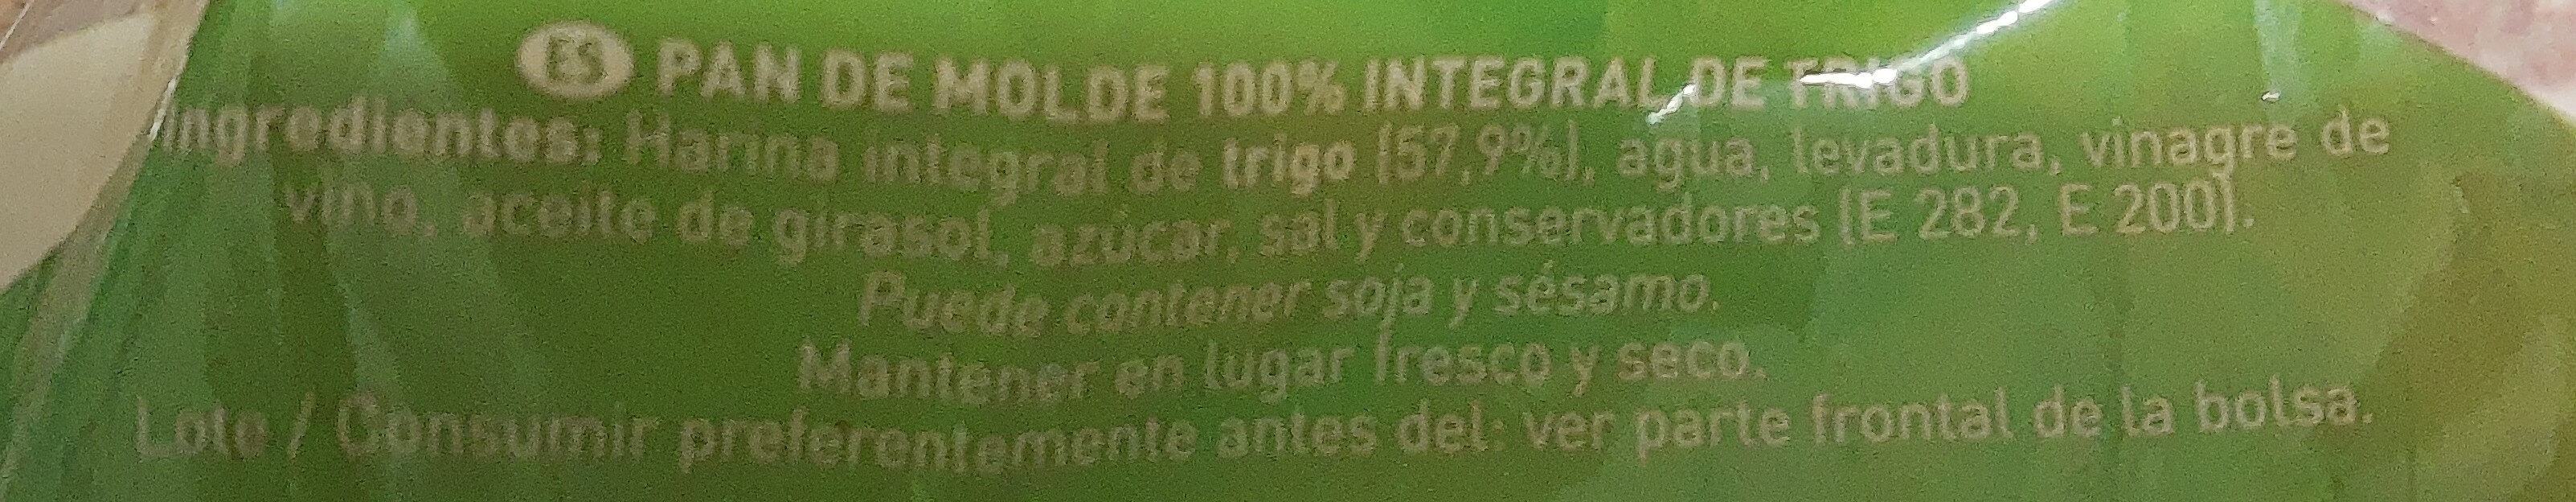 Pan rústico 100% integral de trigo - Ingredients - es